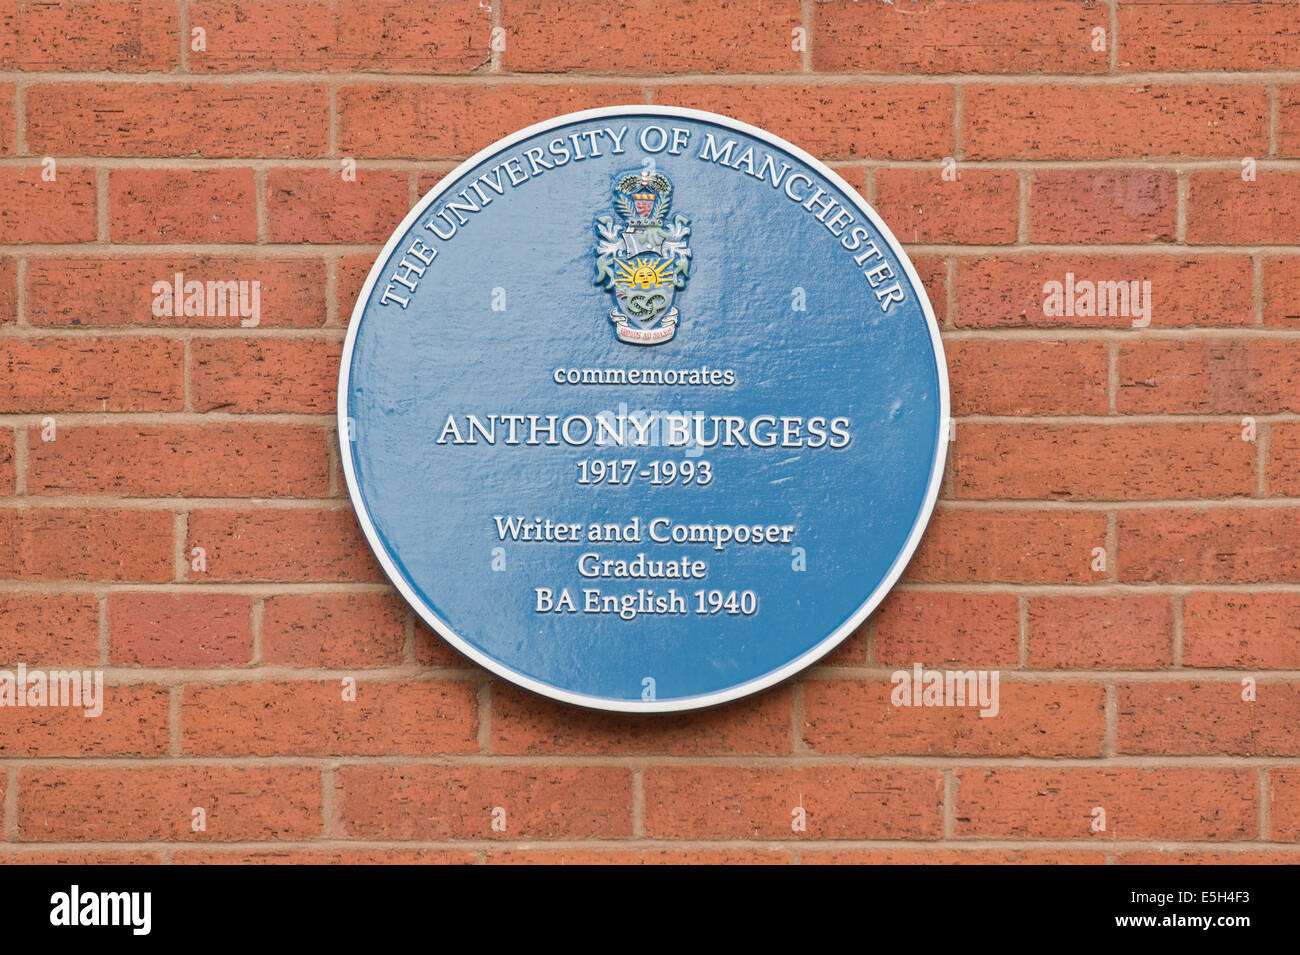 Une plaque commémorant l'écrivain Anthony Burgess situé dans le campus de l'Université salon (off) Oxford Road à Manchester. Banque D'Images